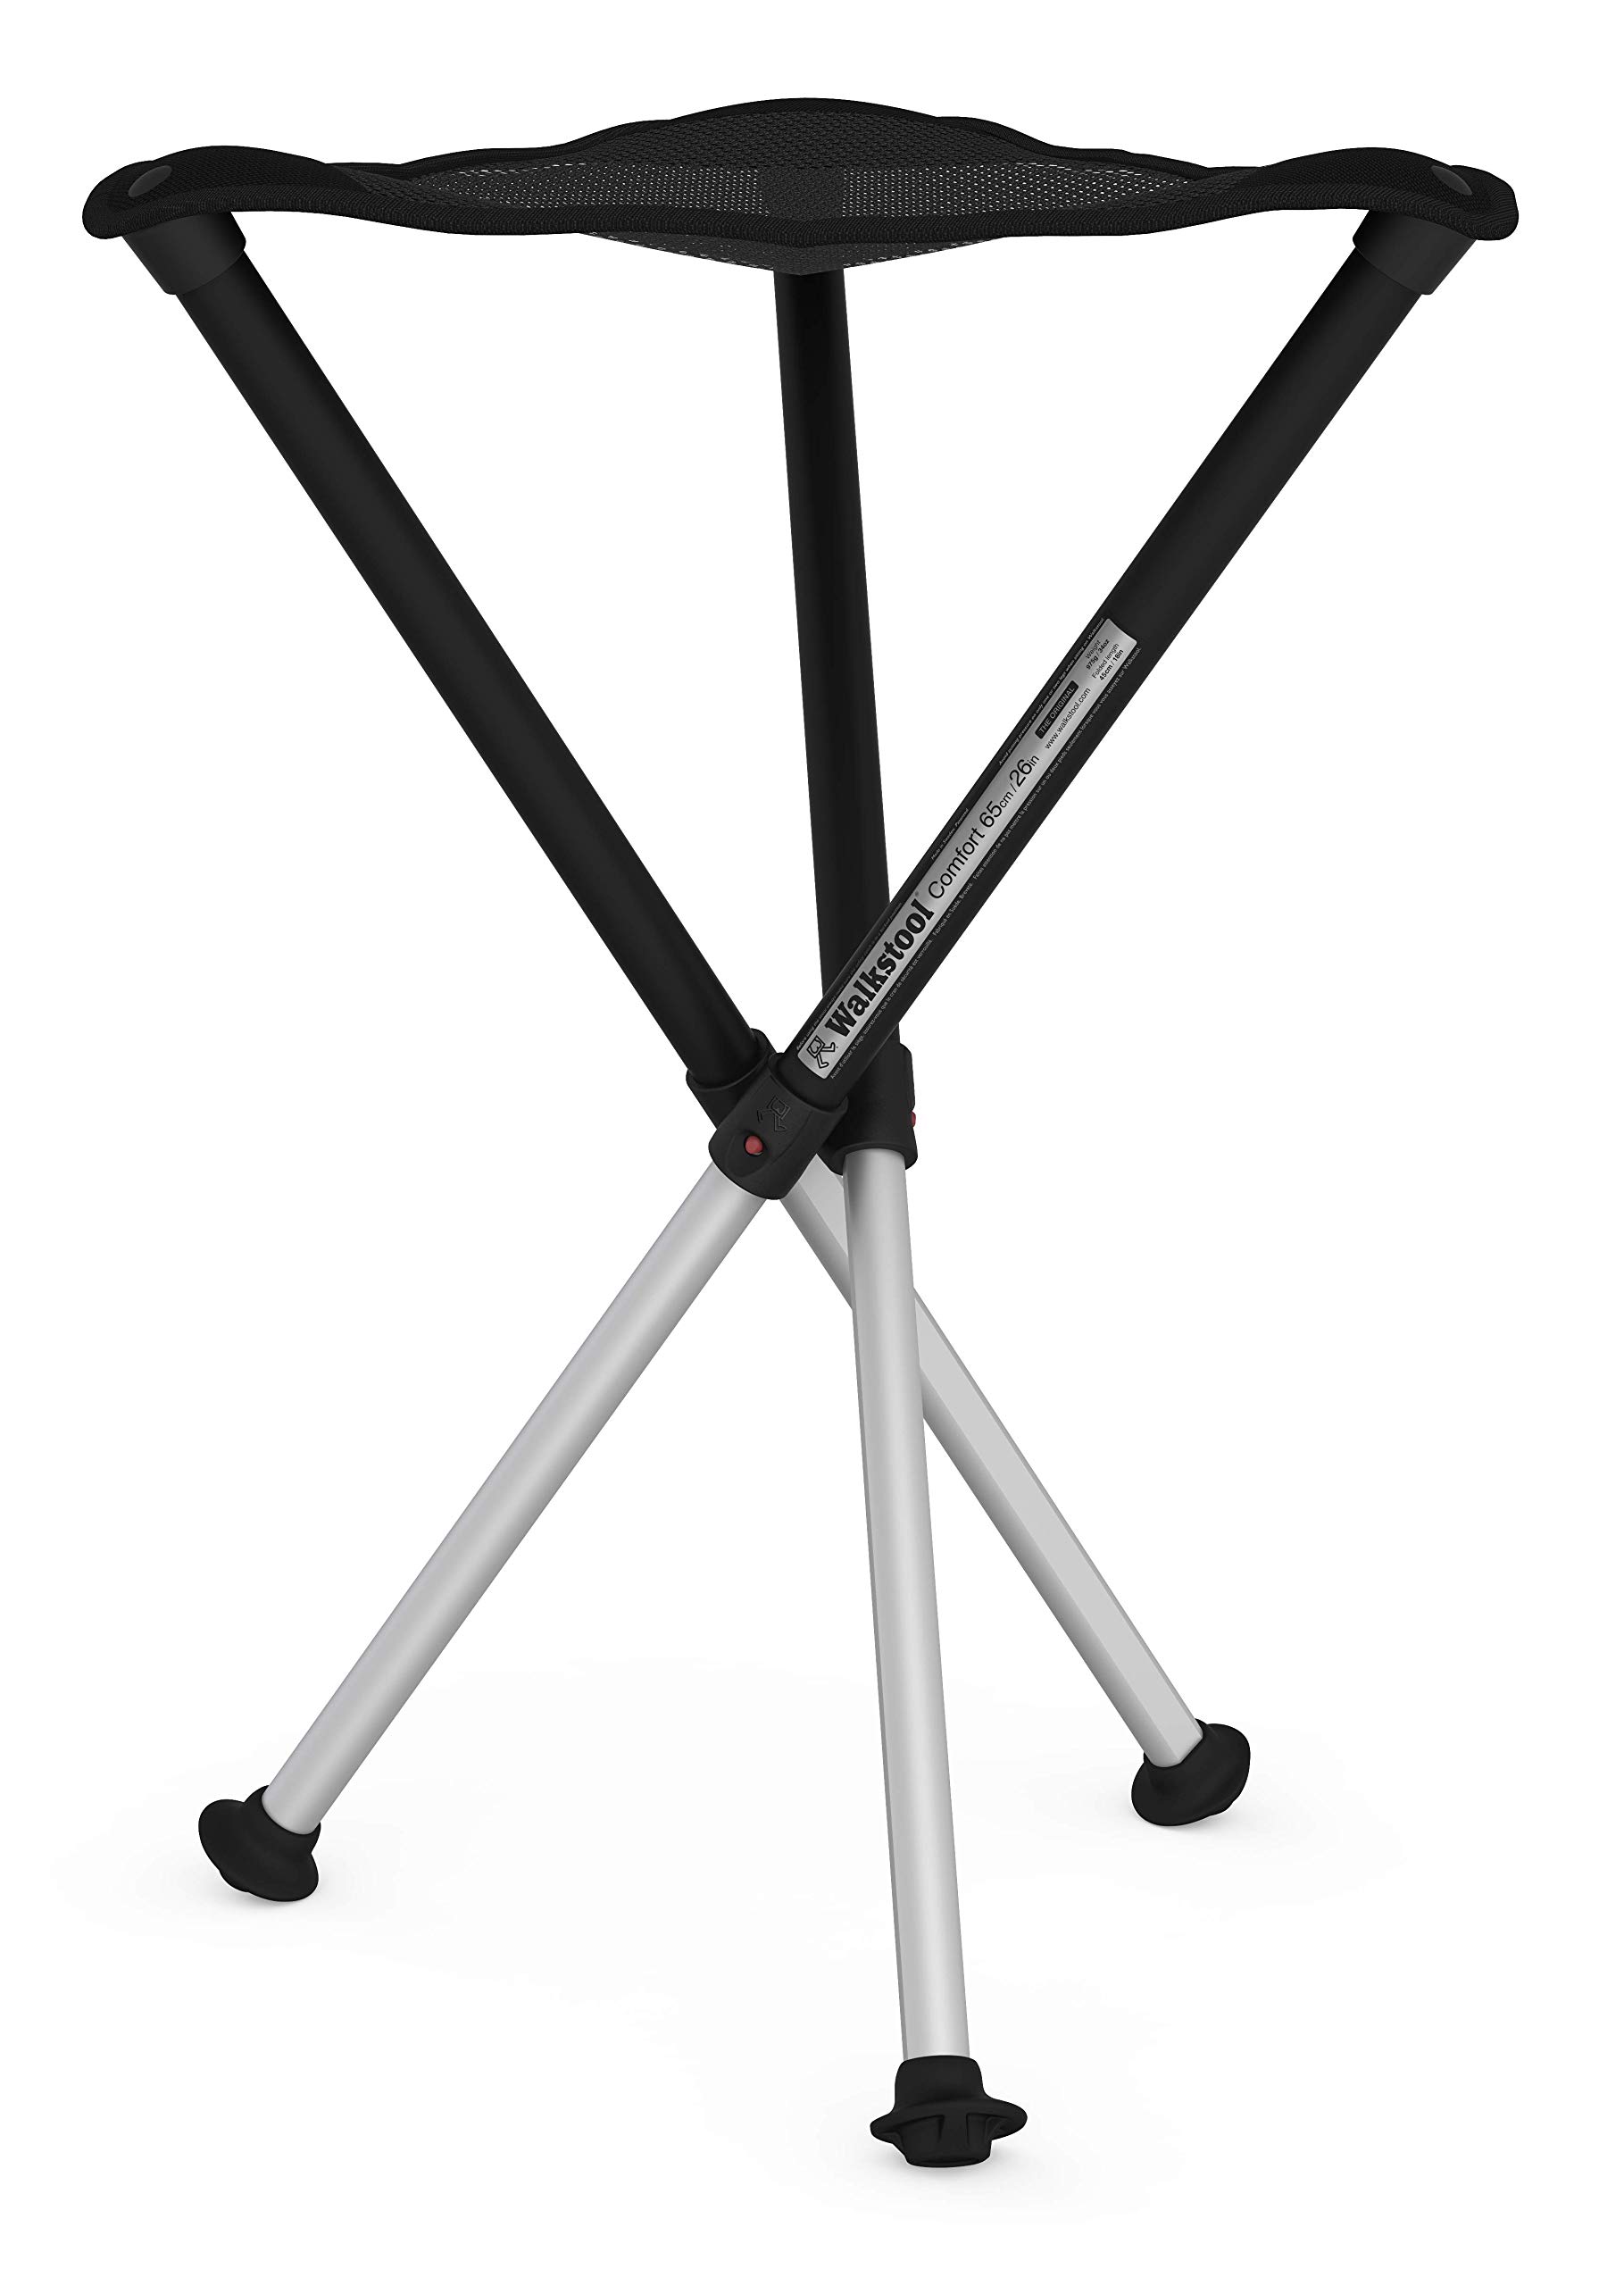 Walkstool - Modell Comfort - Schwarz und Silber - 3-Beiniger Klapphocker aus Aluminium - Sitzhöhe 65 cm - Klapphocker Faltbar, Belastbar mit 250 kg - Hergestellt in Schweden